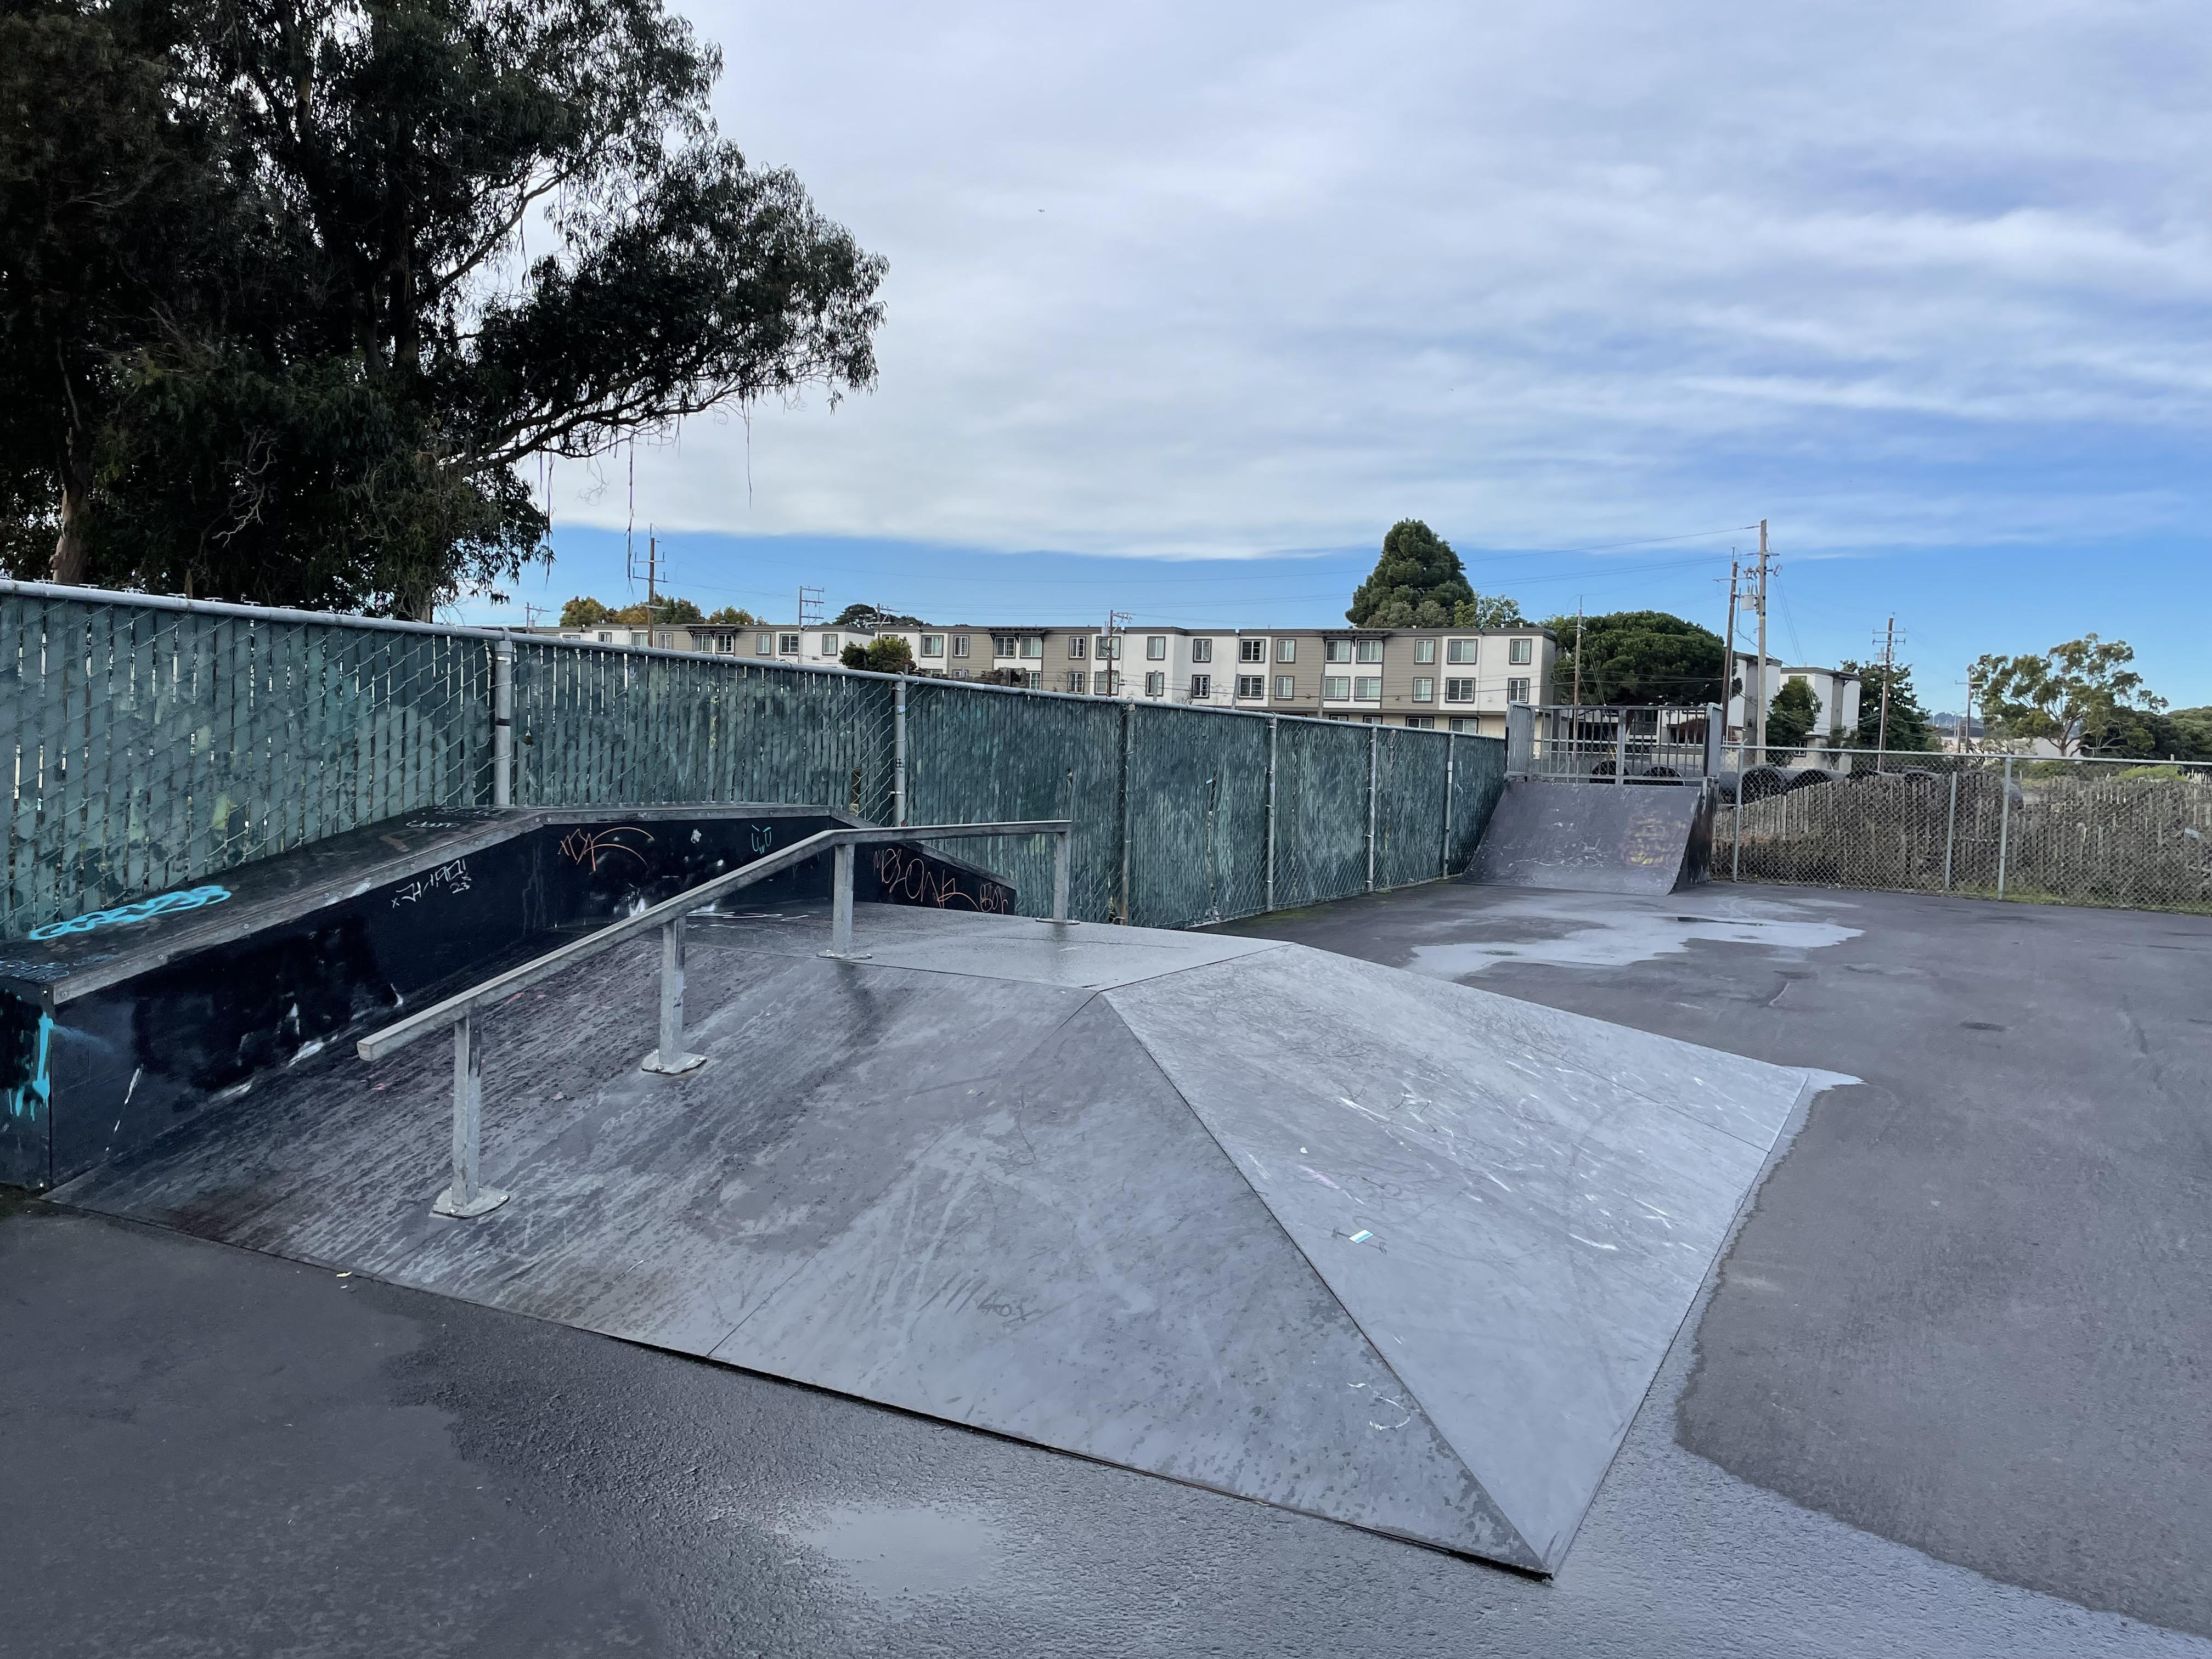 Orange skatepark